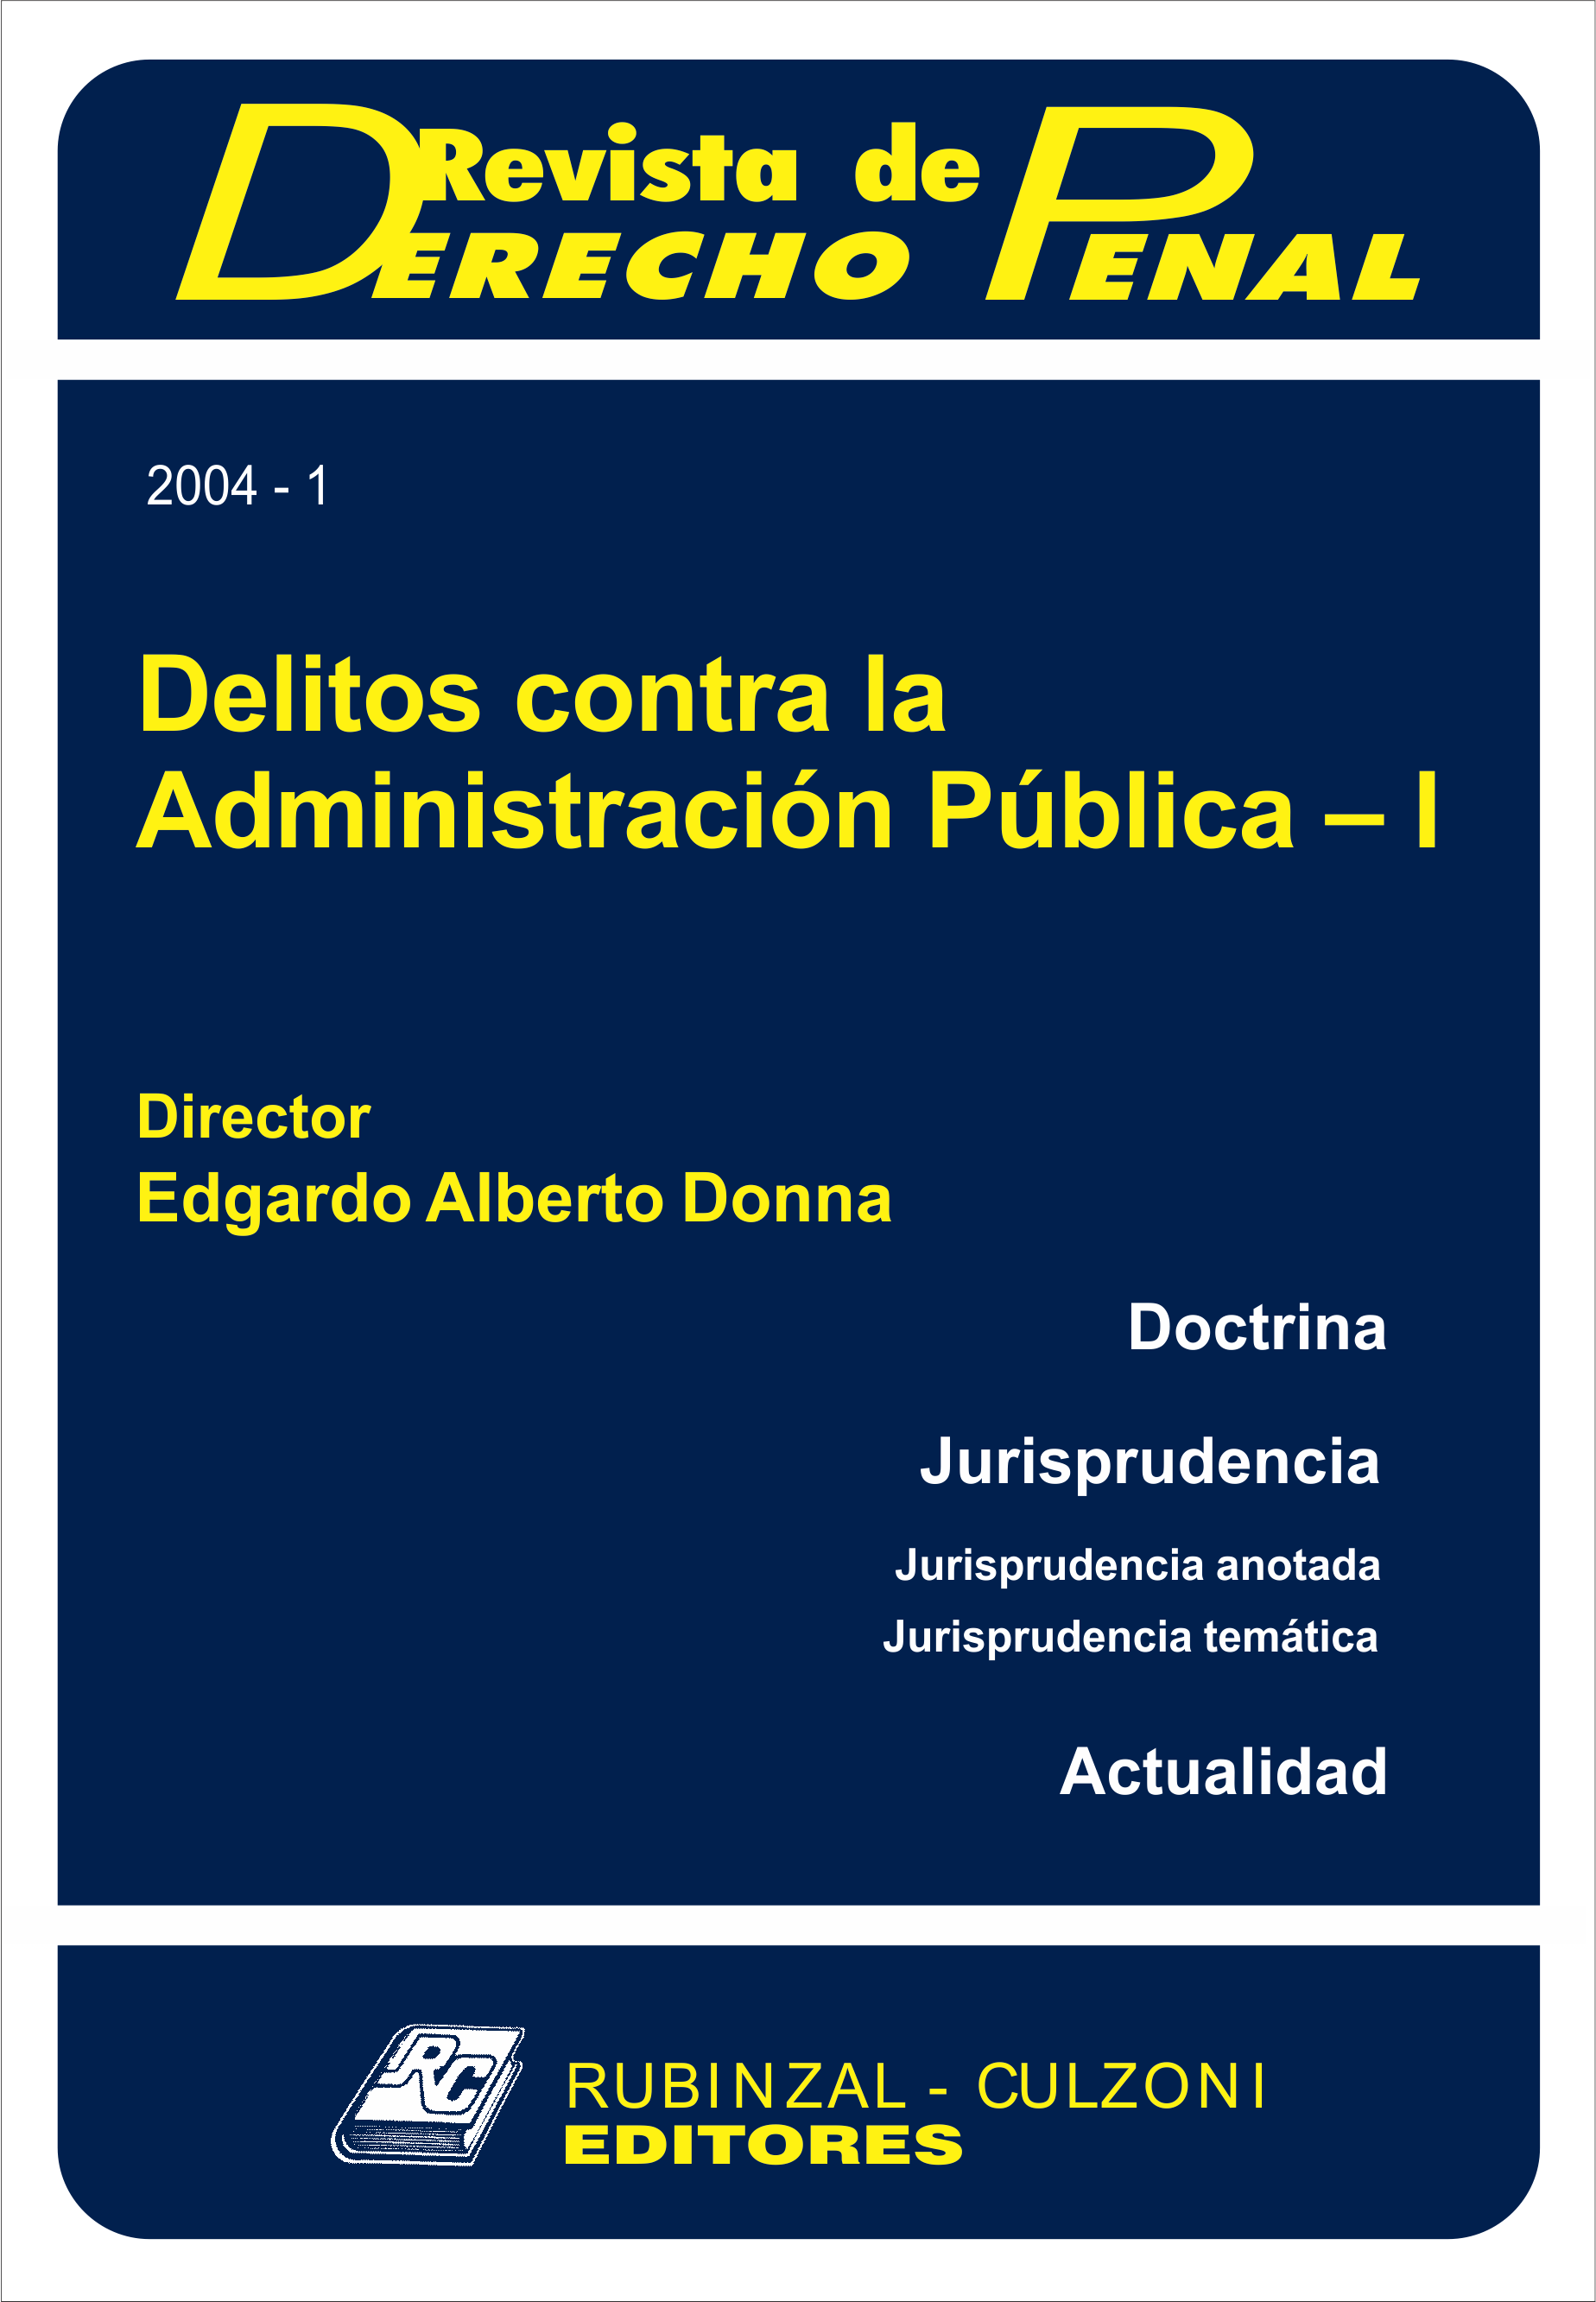 Revista de Derecho Penal - Delitos contra la Administración Pública - I.